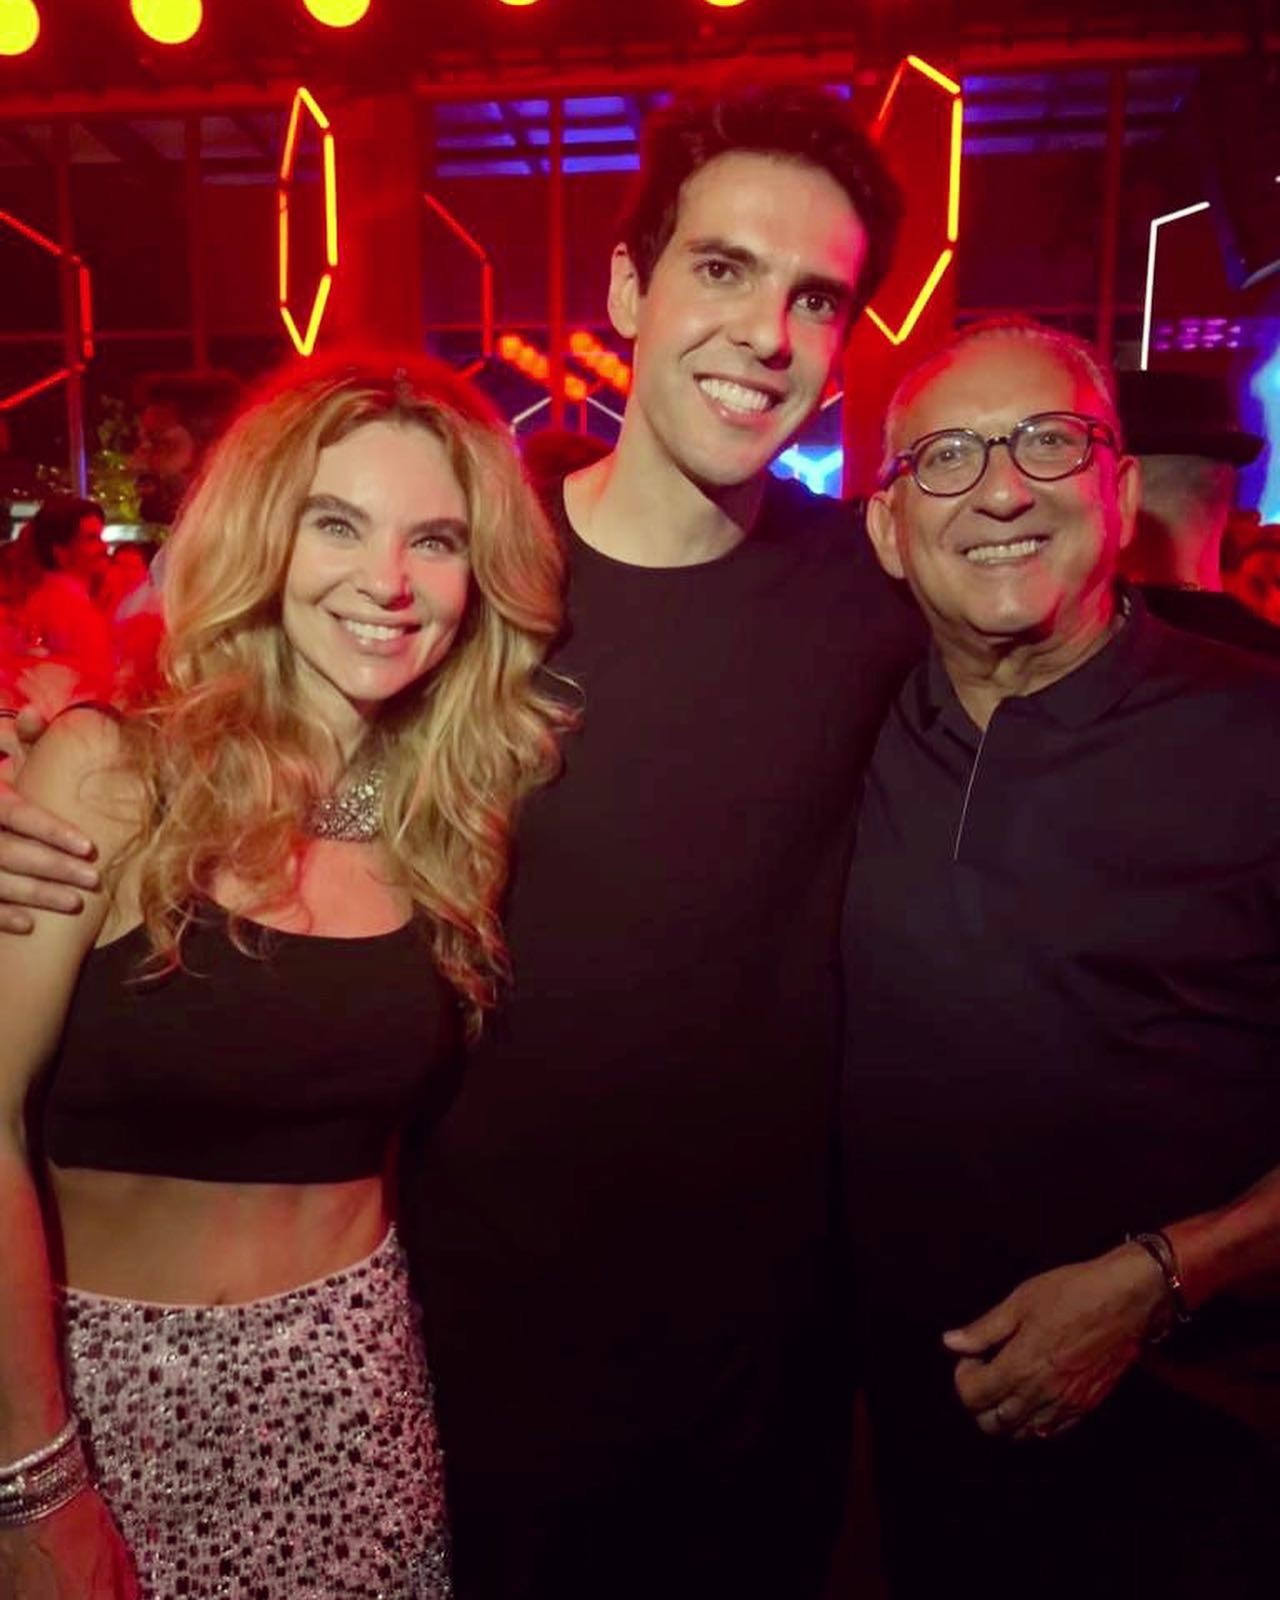 Desirée Soares e Galvão Bueno curtem shows em aniversário de Kaká e posam com o ex-jogador de futebol (Foto: Reprodução/Instagram)